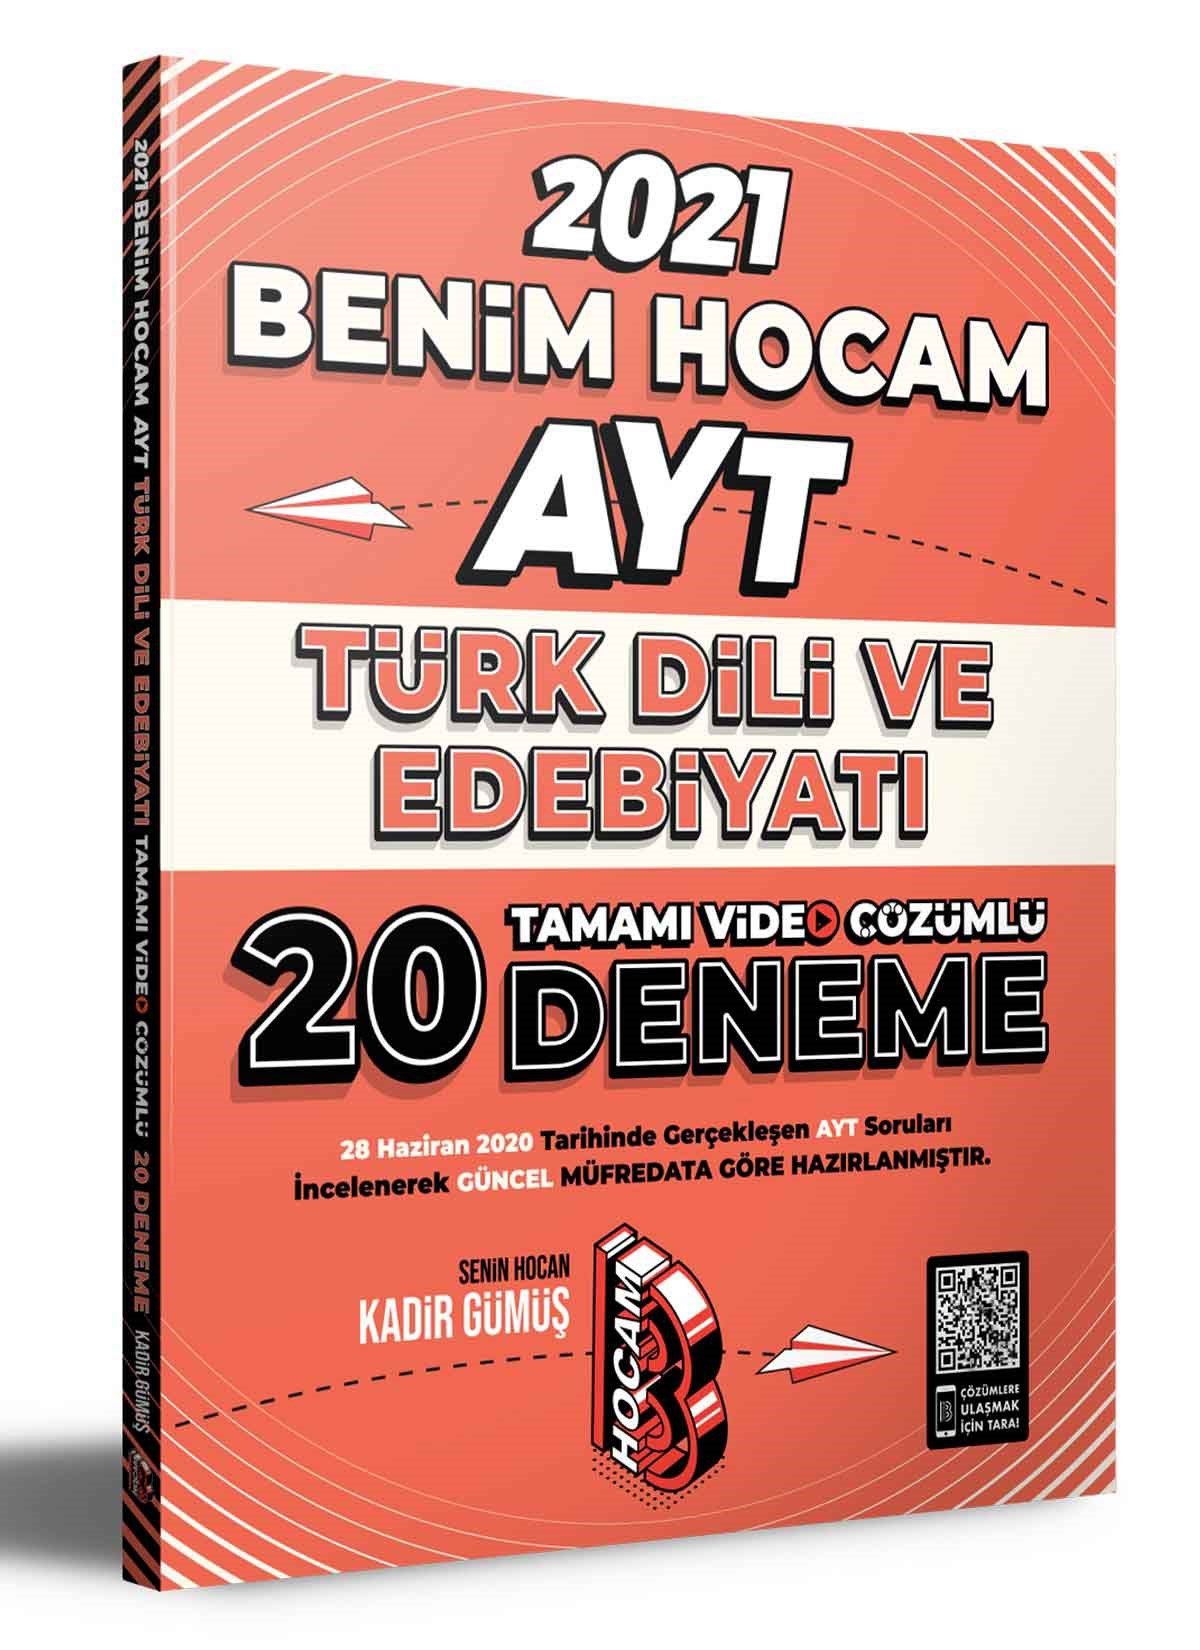 2021 AYT Türk Dili ve Edebiyatı Tamamı Video Çözümlü 20 Deneme Sınavı Benim Hocam Yayınları